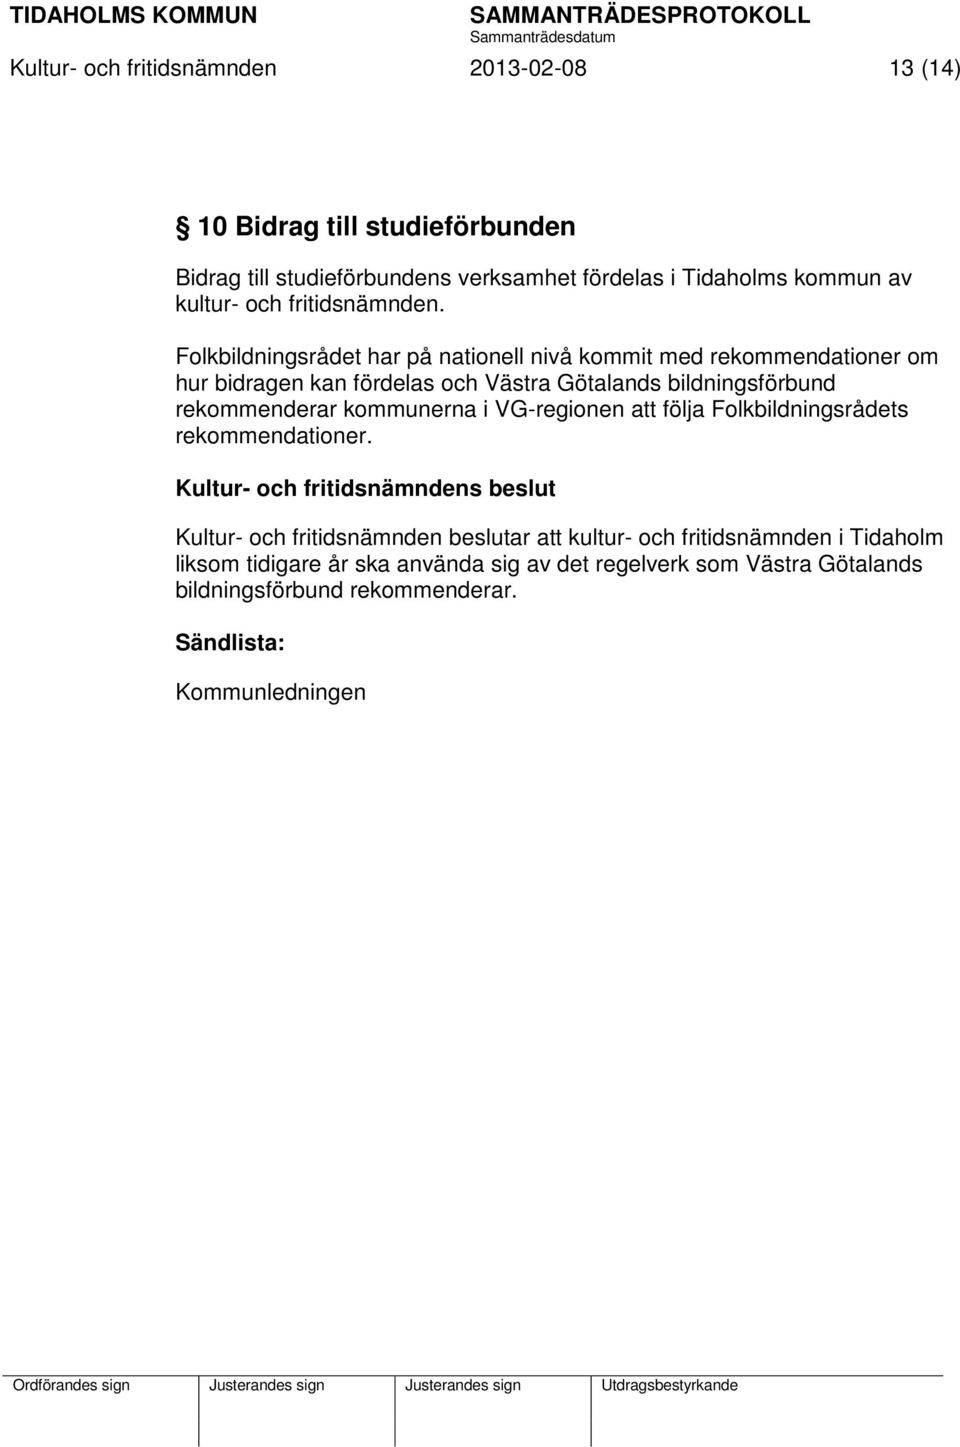 Folkbildningsrådet har på nationell nivå kommit med rekommendationer om hur bidragen kan fördelas och Västra Götalands bildningsförbund rekommenderar